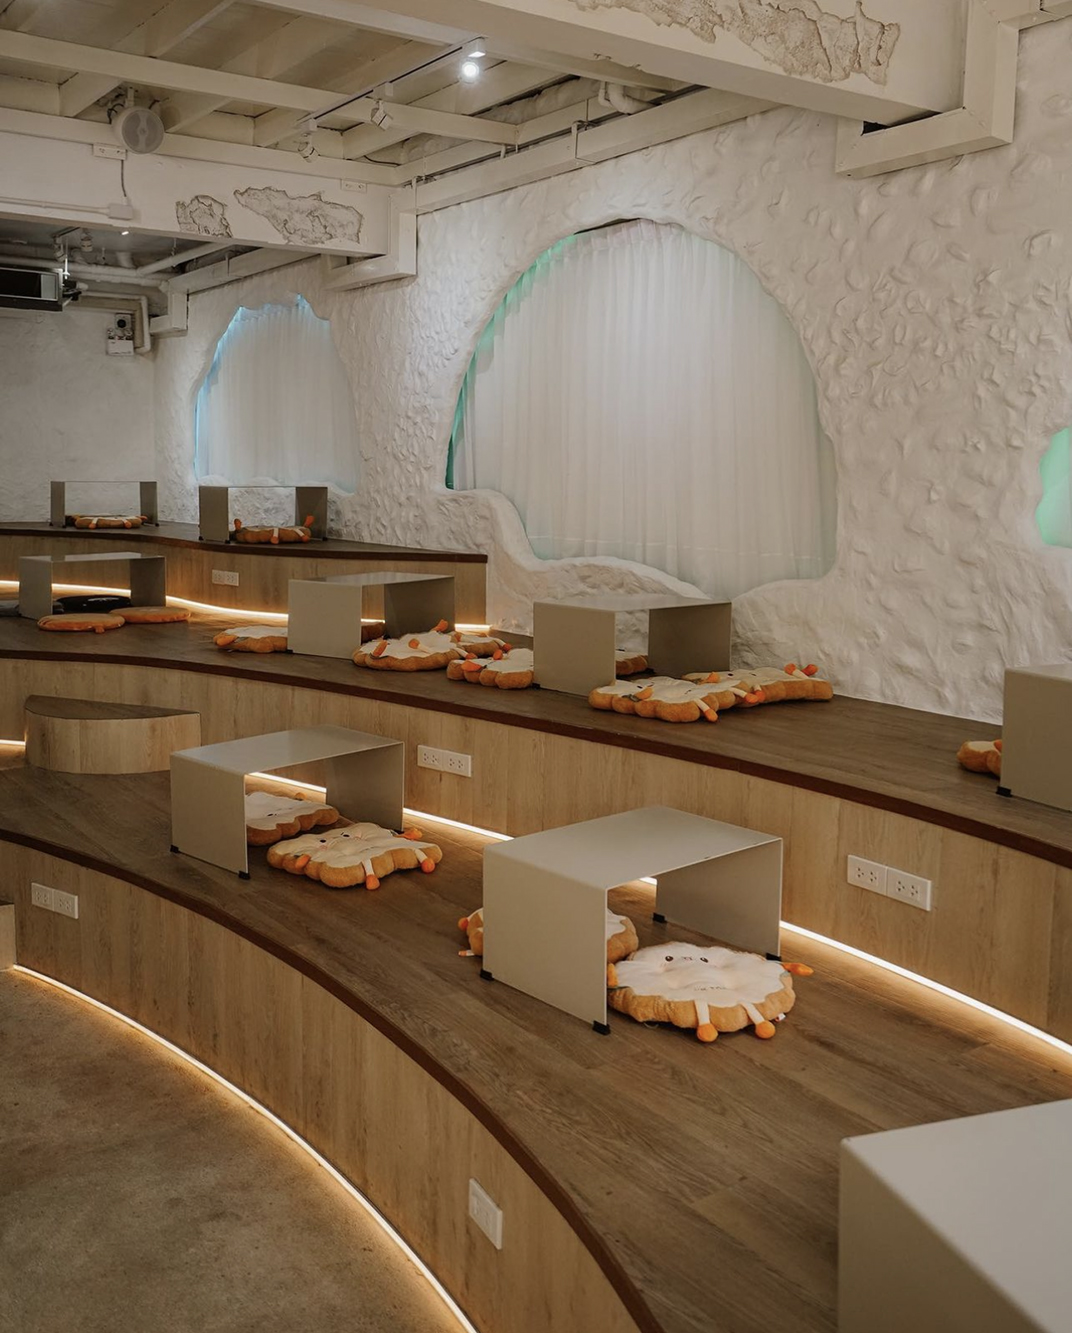 咖啡馆里梁的巧妙设计 泰国 珠海 东莞 上海 北京 广州 武汉 咖啡店 餐饮商业 logo设计 vi设计 空间设计